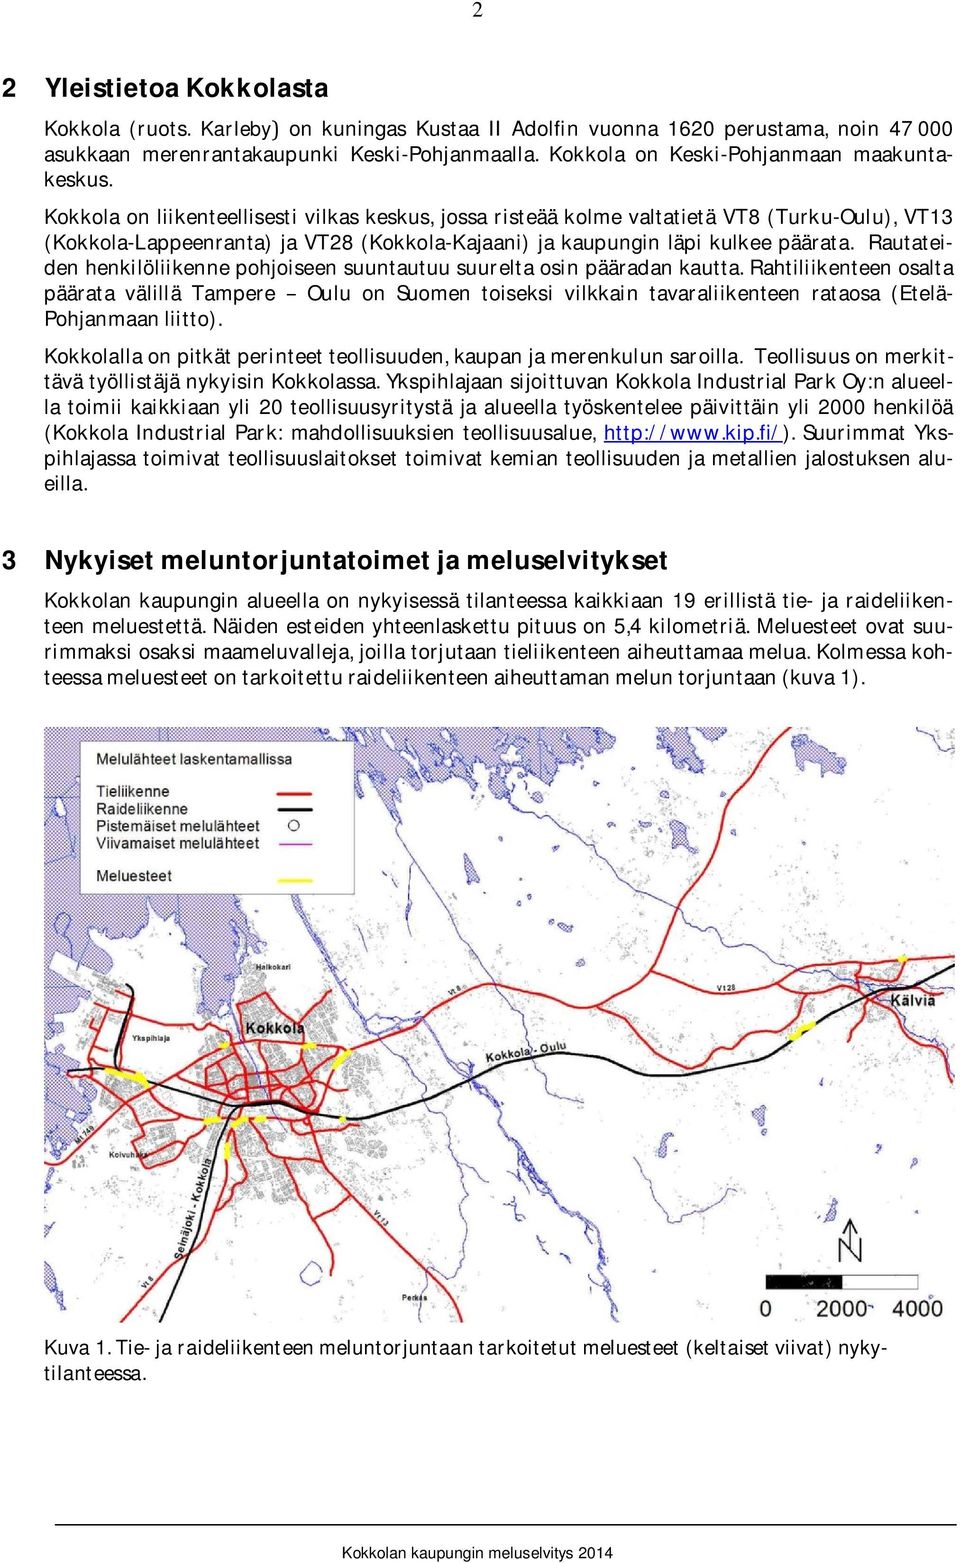 Kokkola onliikenteellisestivilkaskeskus, jossaristeääkolmevaltatietävt8(turku-oulu),vt13 (Kokkola-Lappeenranta) ja VT28 (Kokkola-Kajaani) ja kaupungin läpi kulkee päärata.